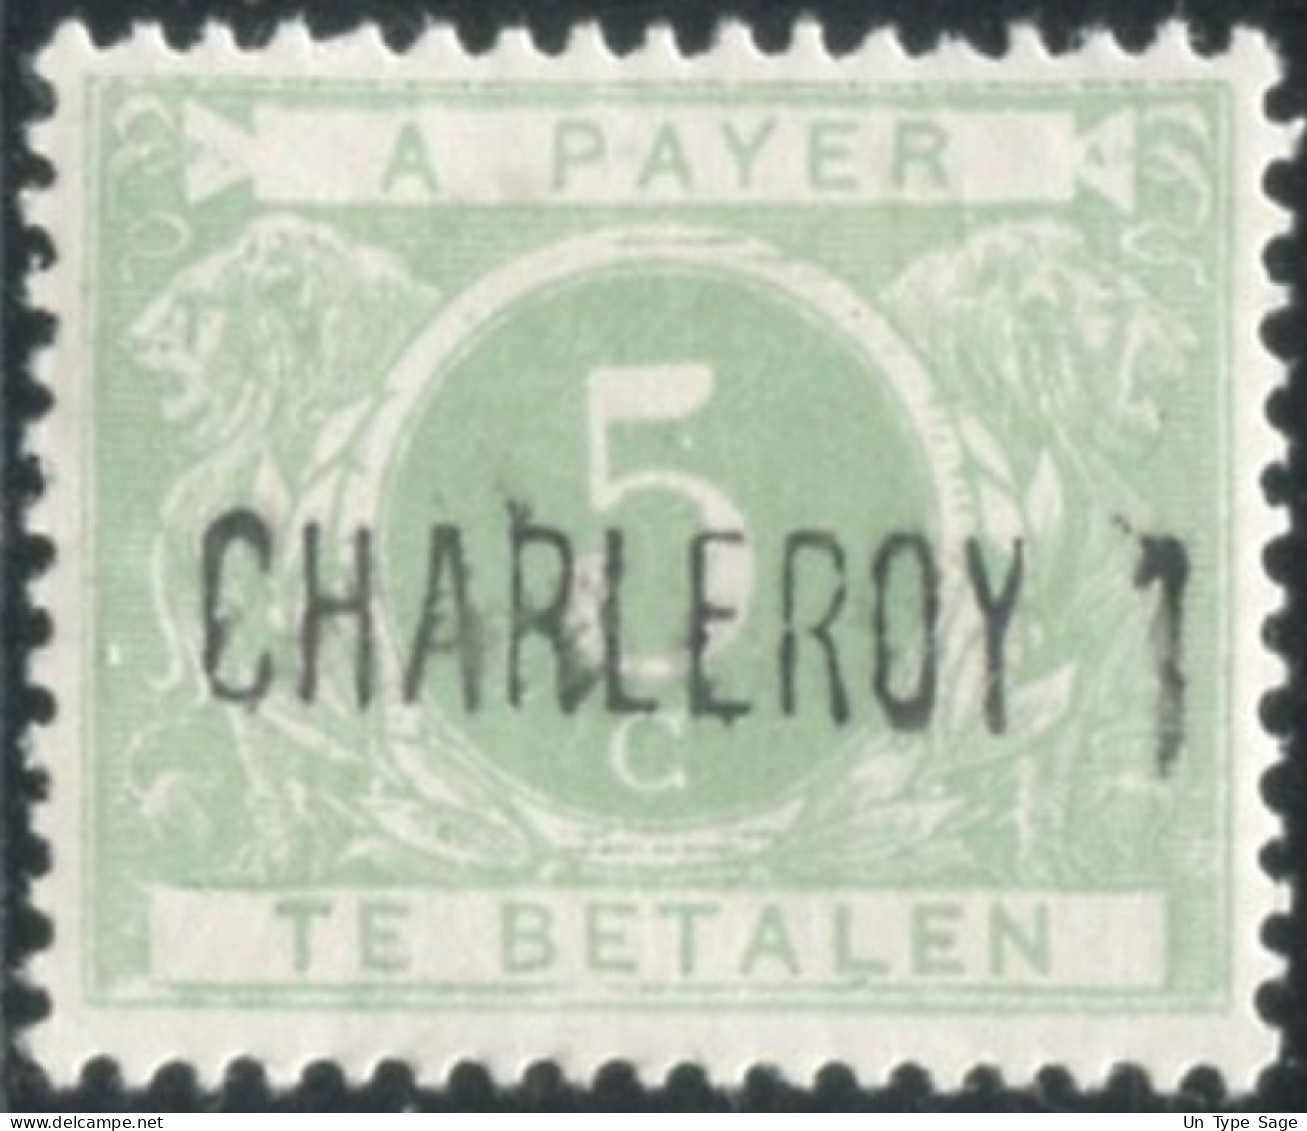 Belgique Timbre-taxe (TX) - Surcharge Locale De Distributeur - CHARLEROY 1 - (F995) - Francobolli